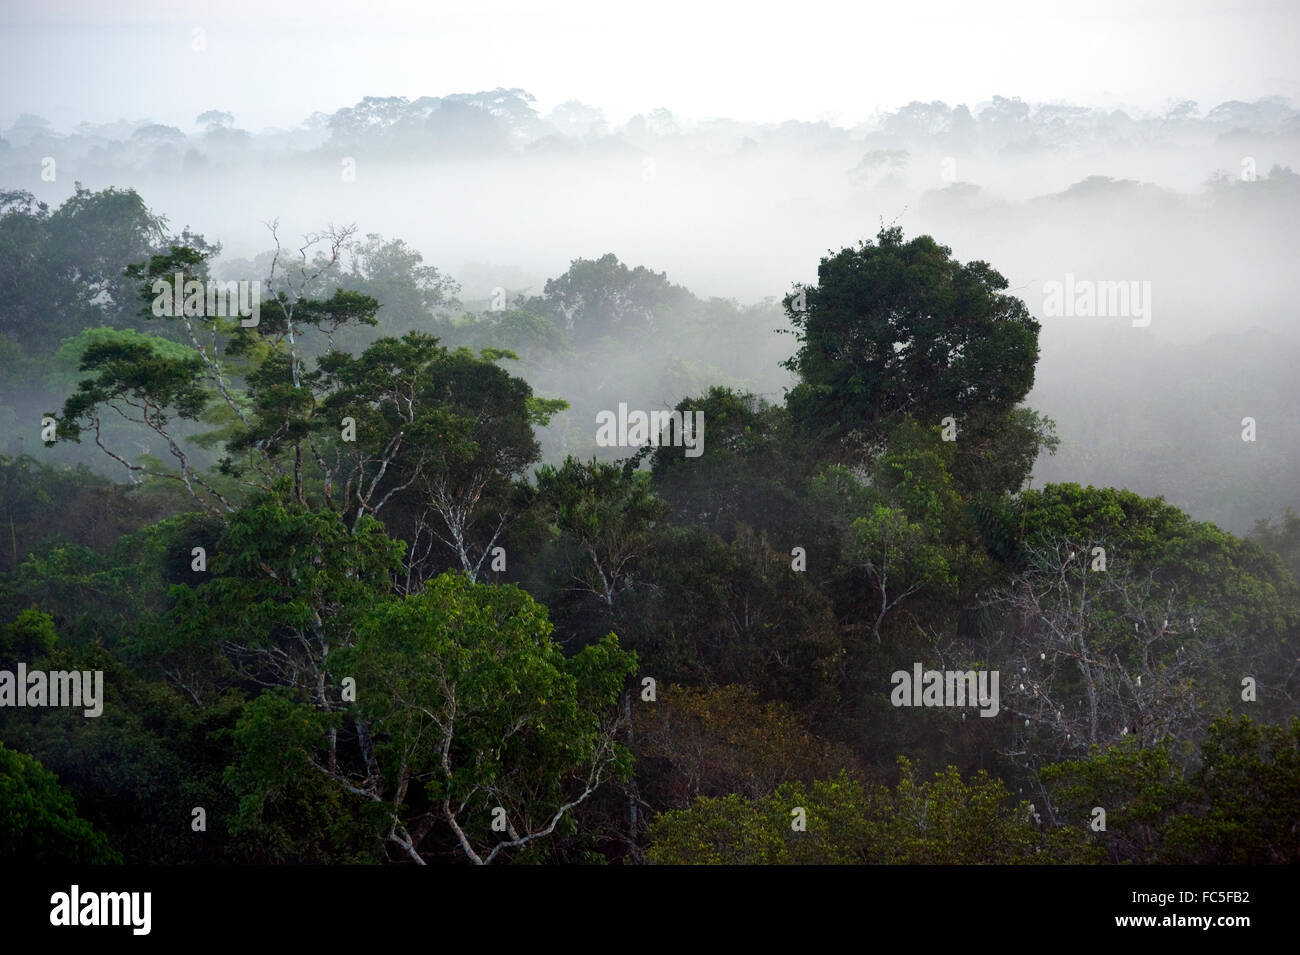 Amazonas-Regenwald von Baldachin in Ecuador gesehen Stockfoto